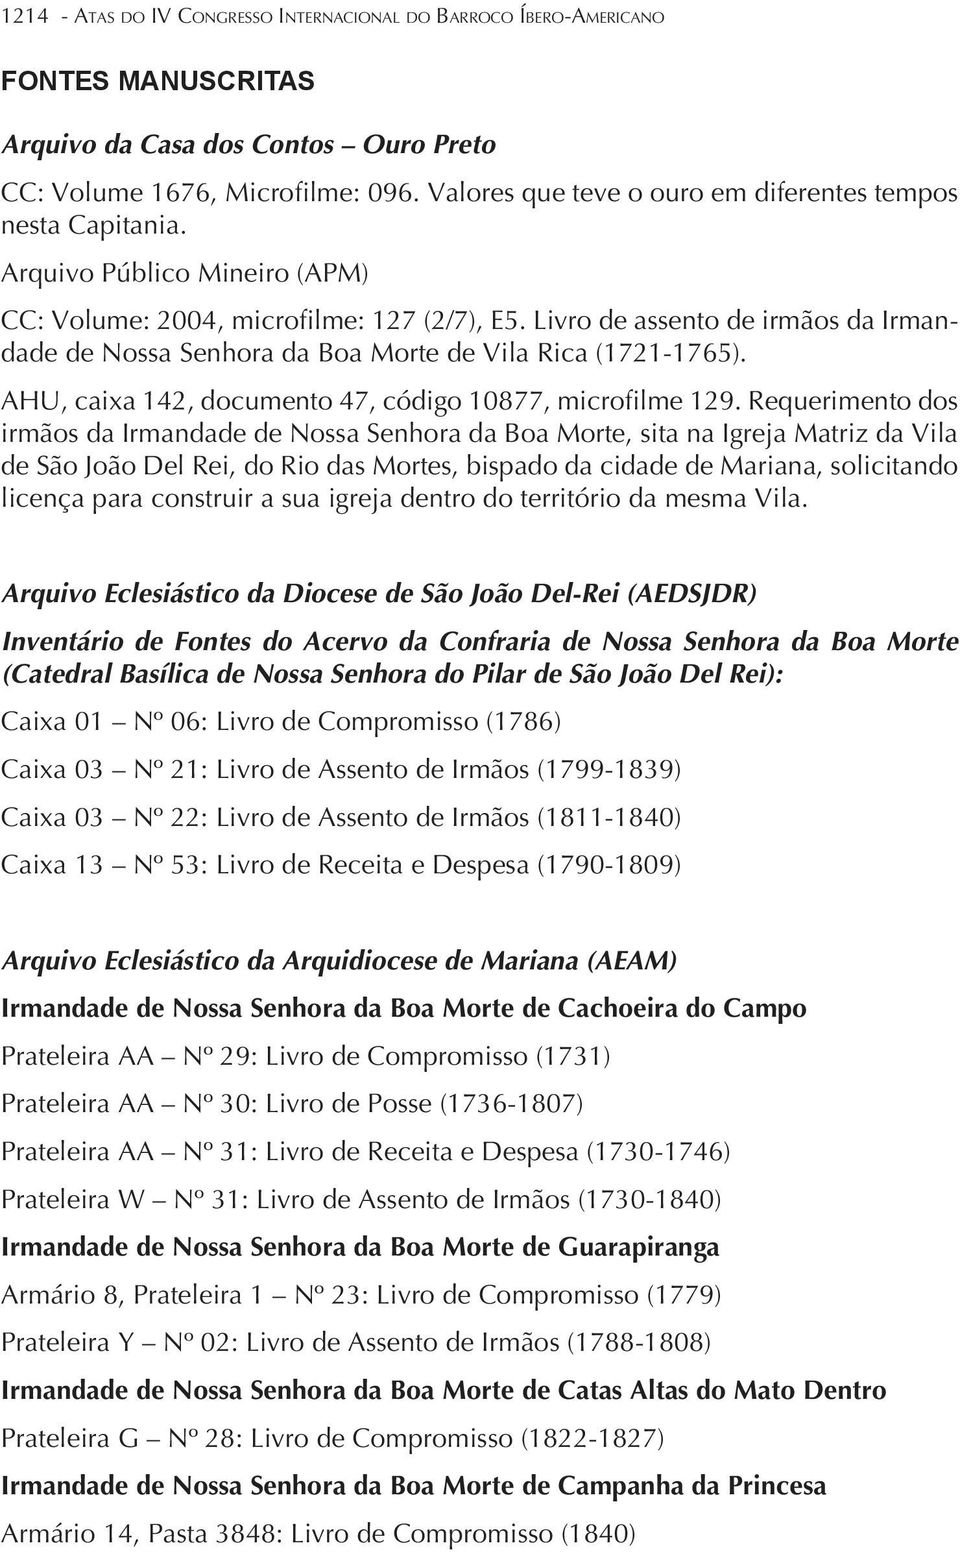 Livro de assento de irmãos da Irmandade de Nossa Senhora da Boa Morte de Vila Rica (1721-1765). AHU, caixa 142, documento 47, código 10877, microfilme 129.